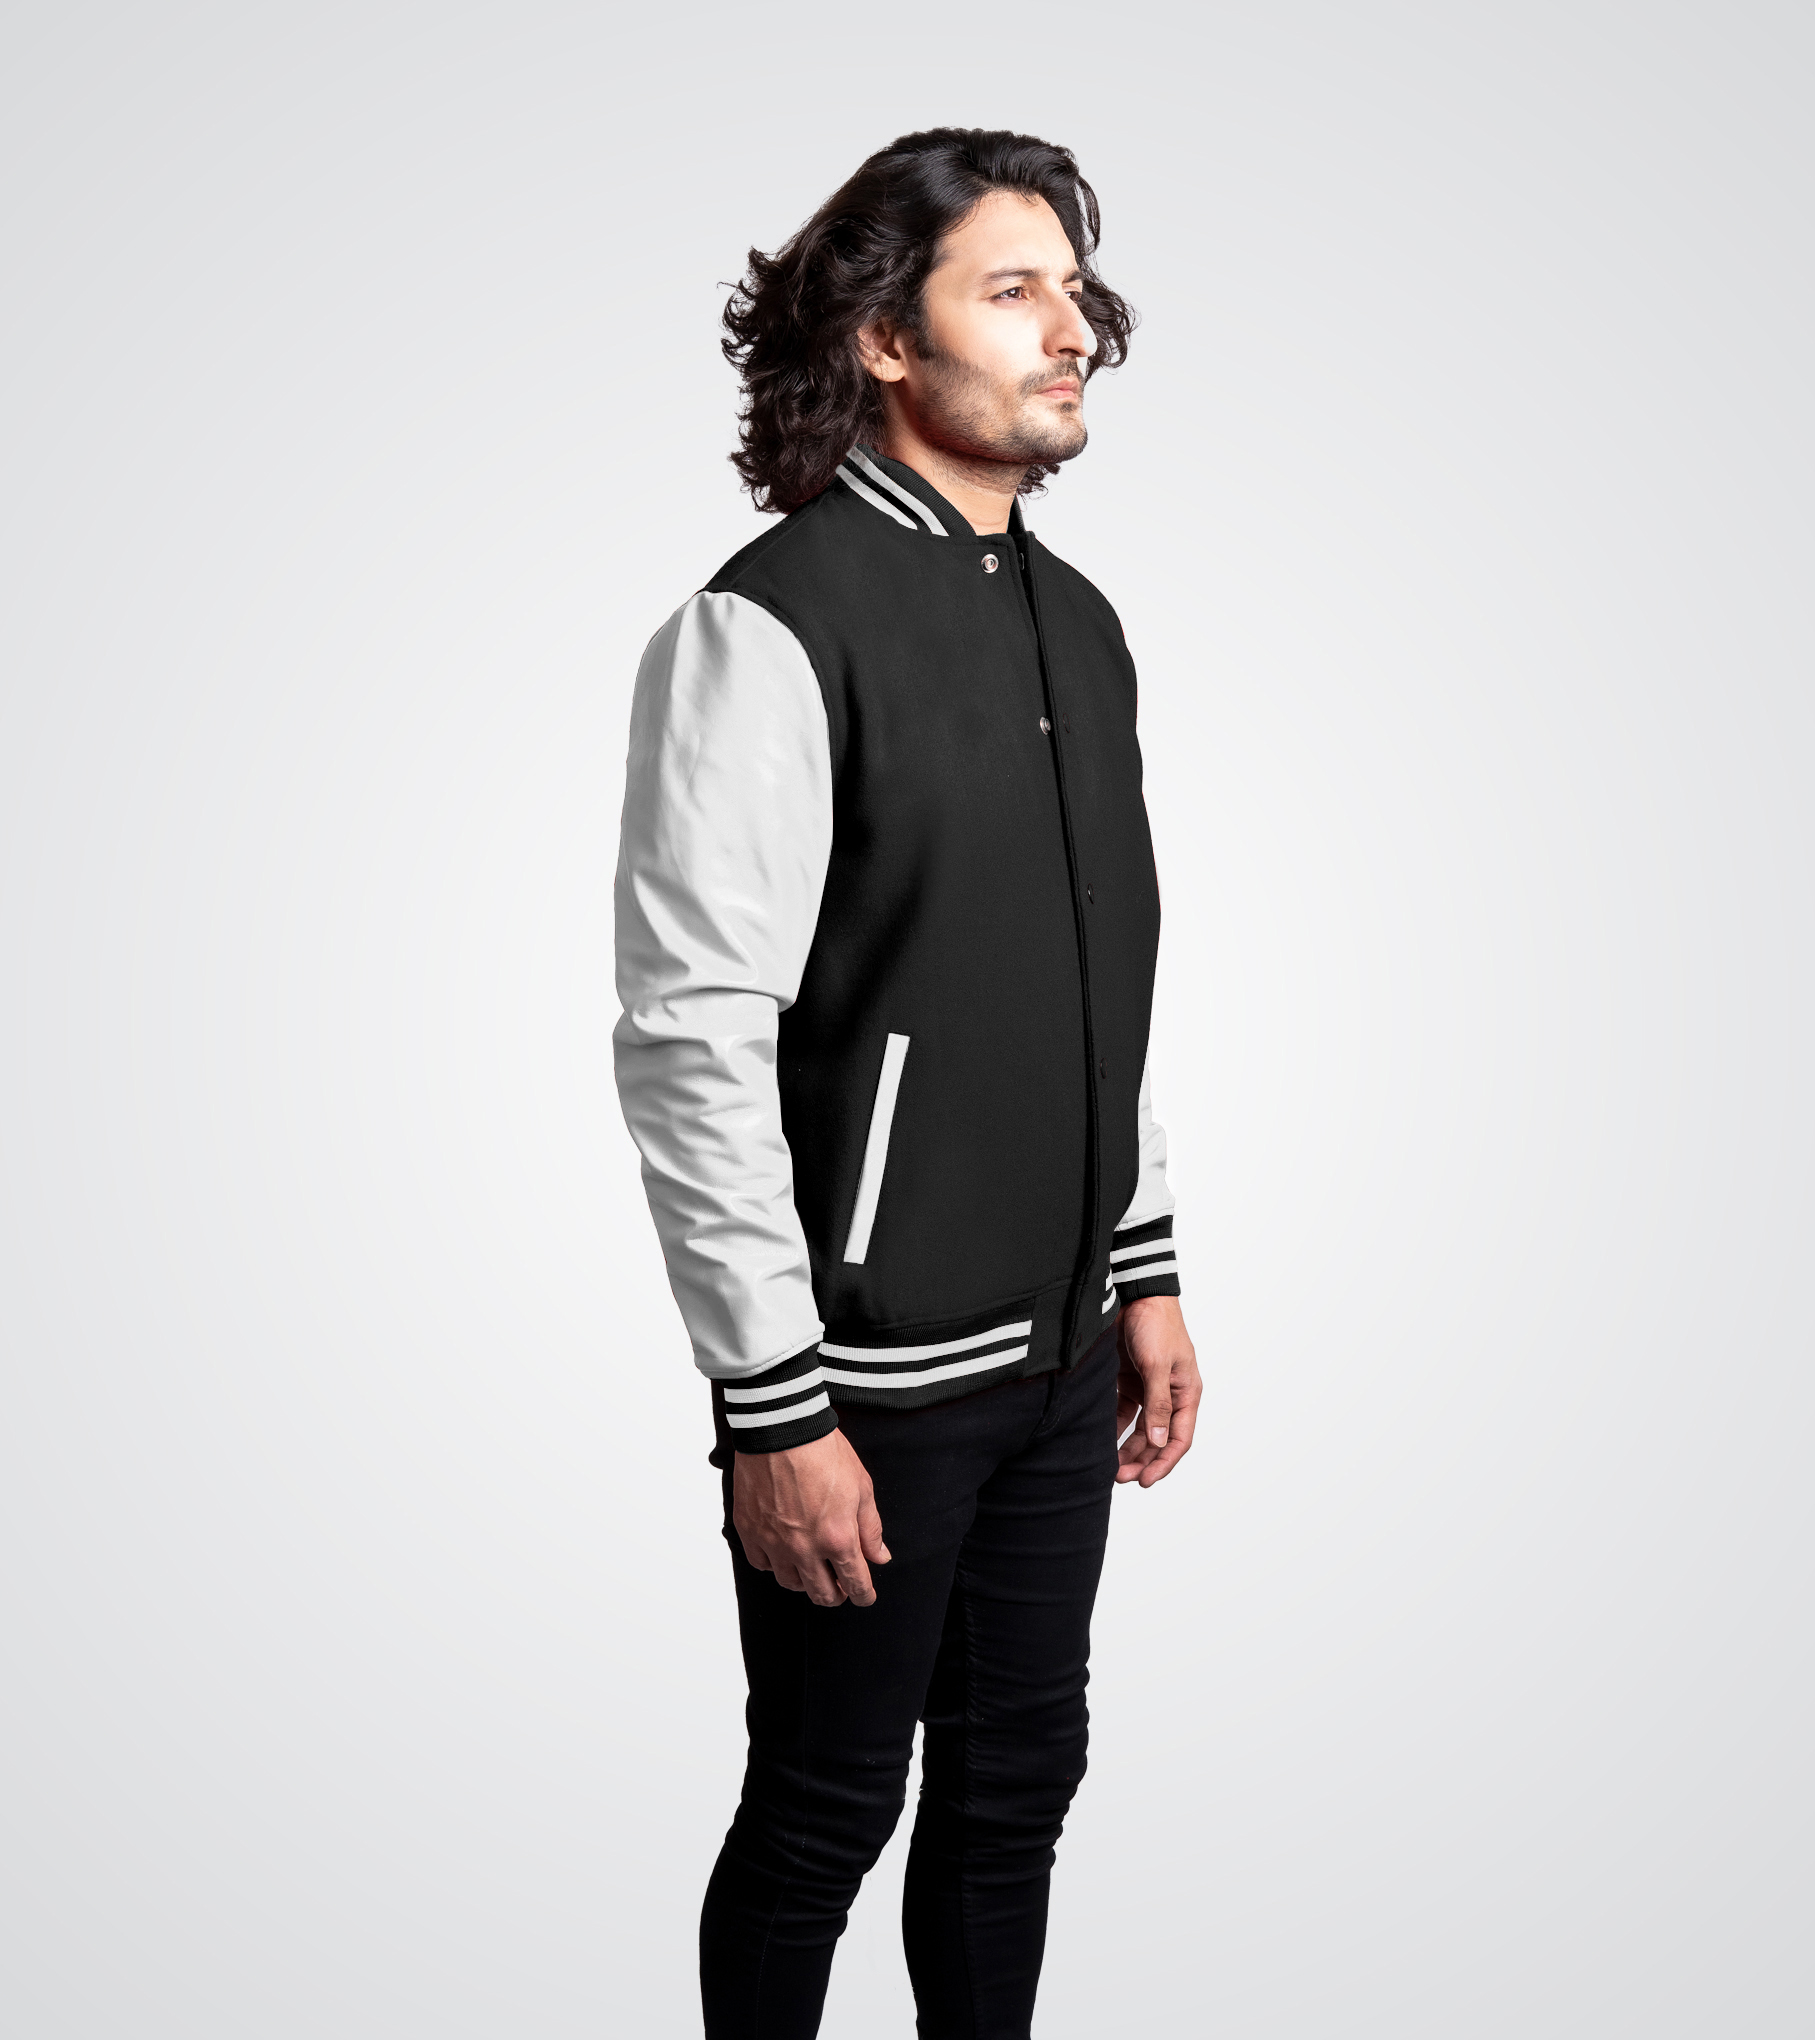 Black and White Varsity Jacket Leather Sleeves - Customware